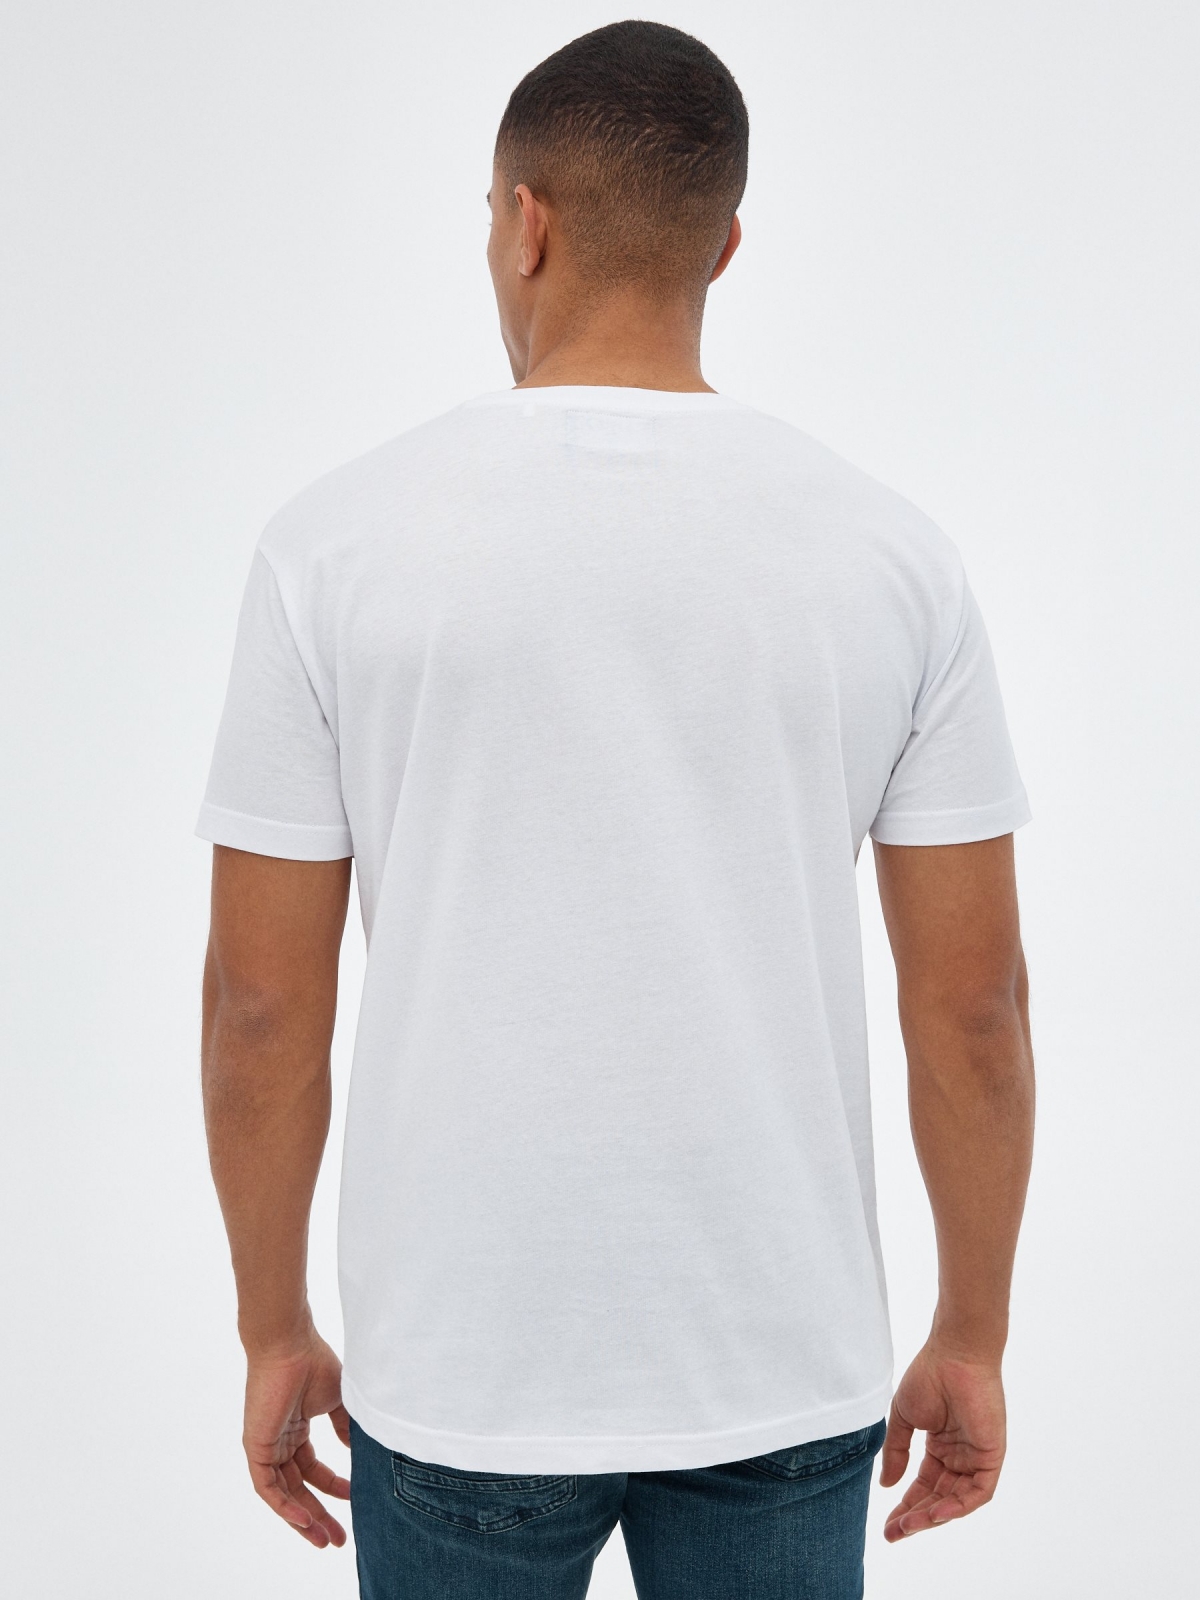 Camiseta calavera multicolor blanco vista media trasera